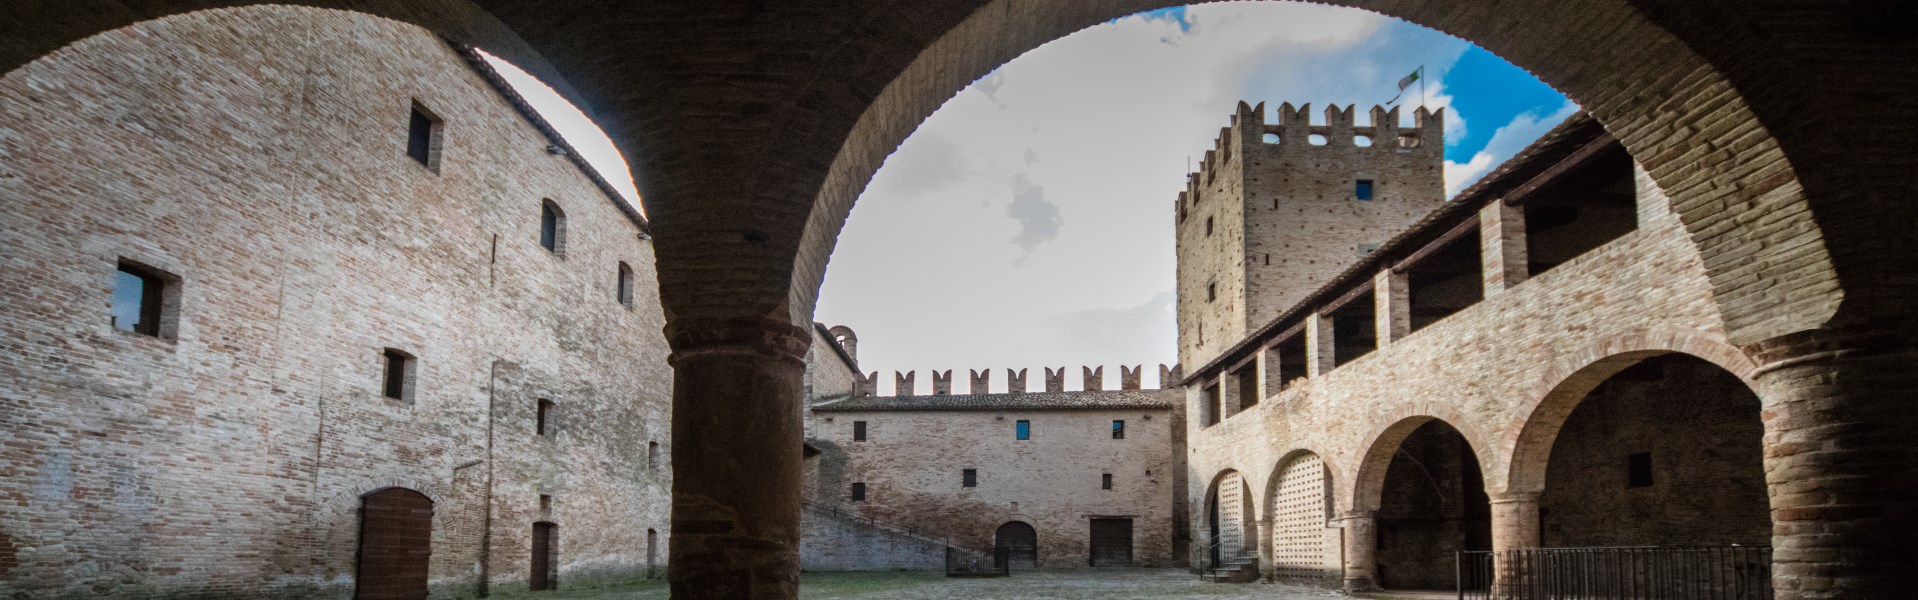 Tolentino - Castello della Rancia